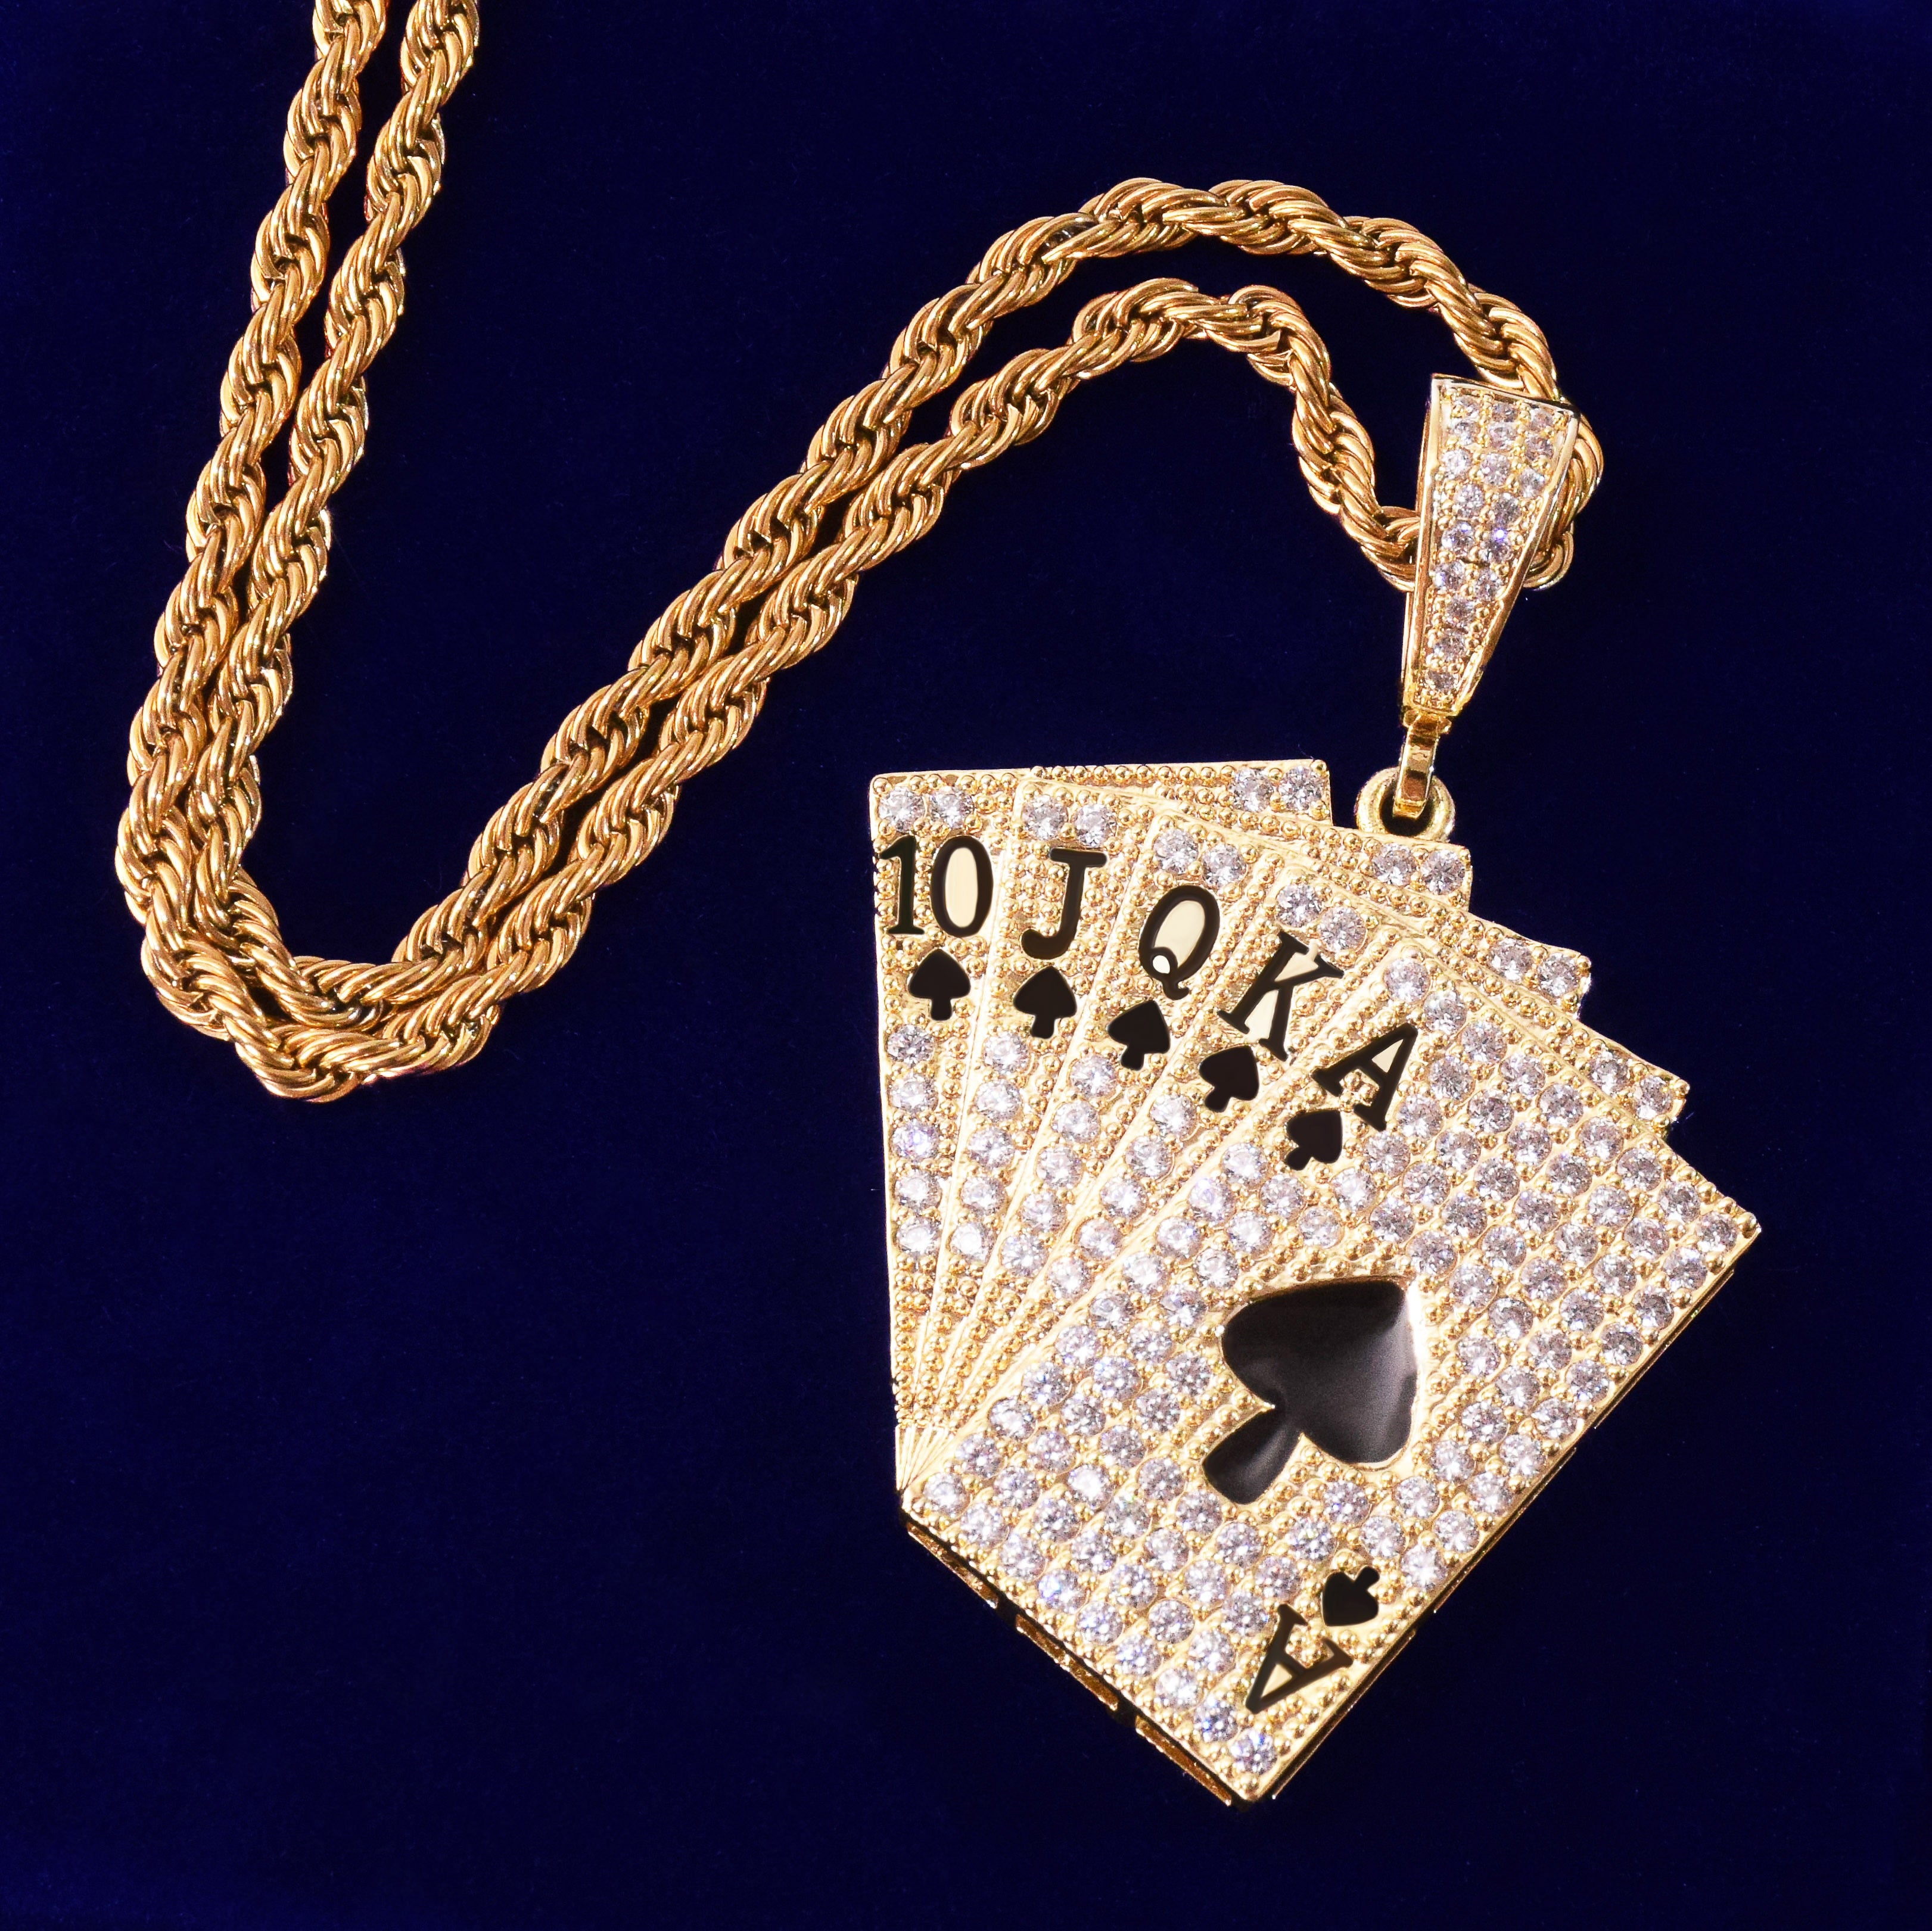 Royal Flush Poker Card Pendant in Gold/White Gold